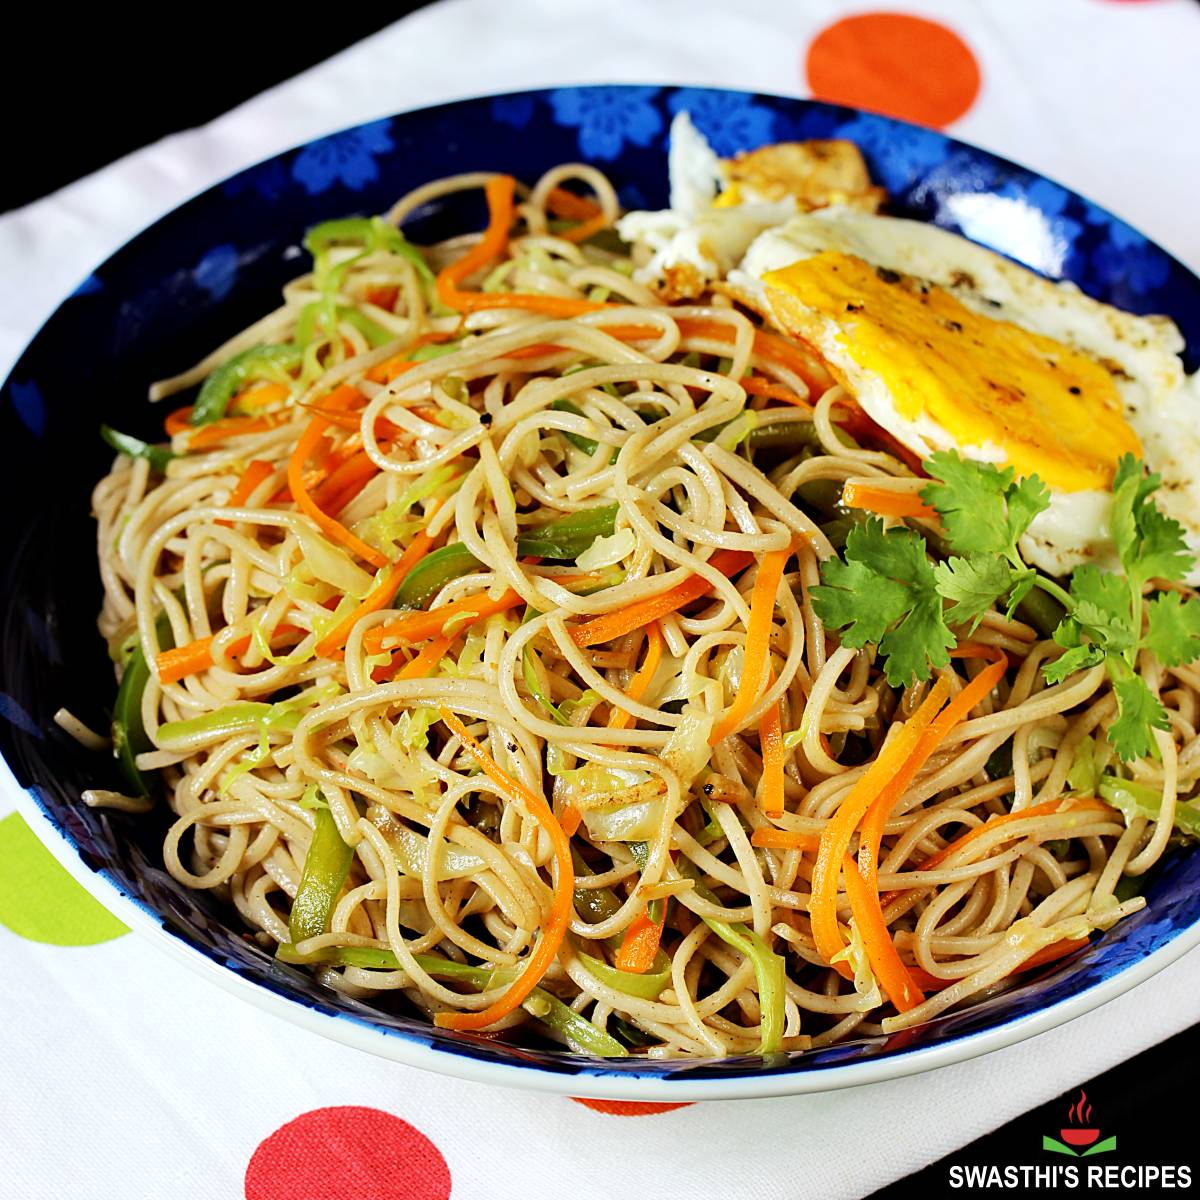 https://www.indianhealthyrecipes.com/wp-content/uploads/2022/02/veg-noodles-vegetable-noodles-recipe.jpg